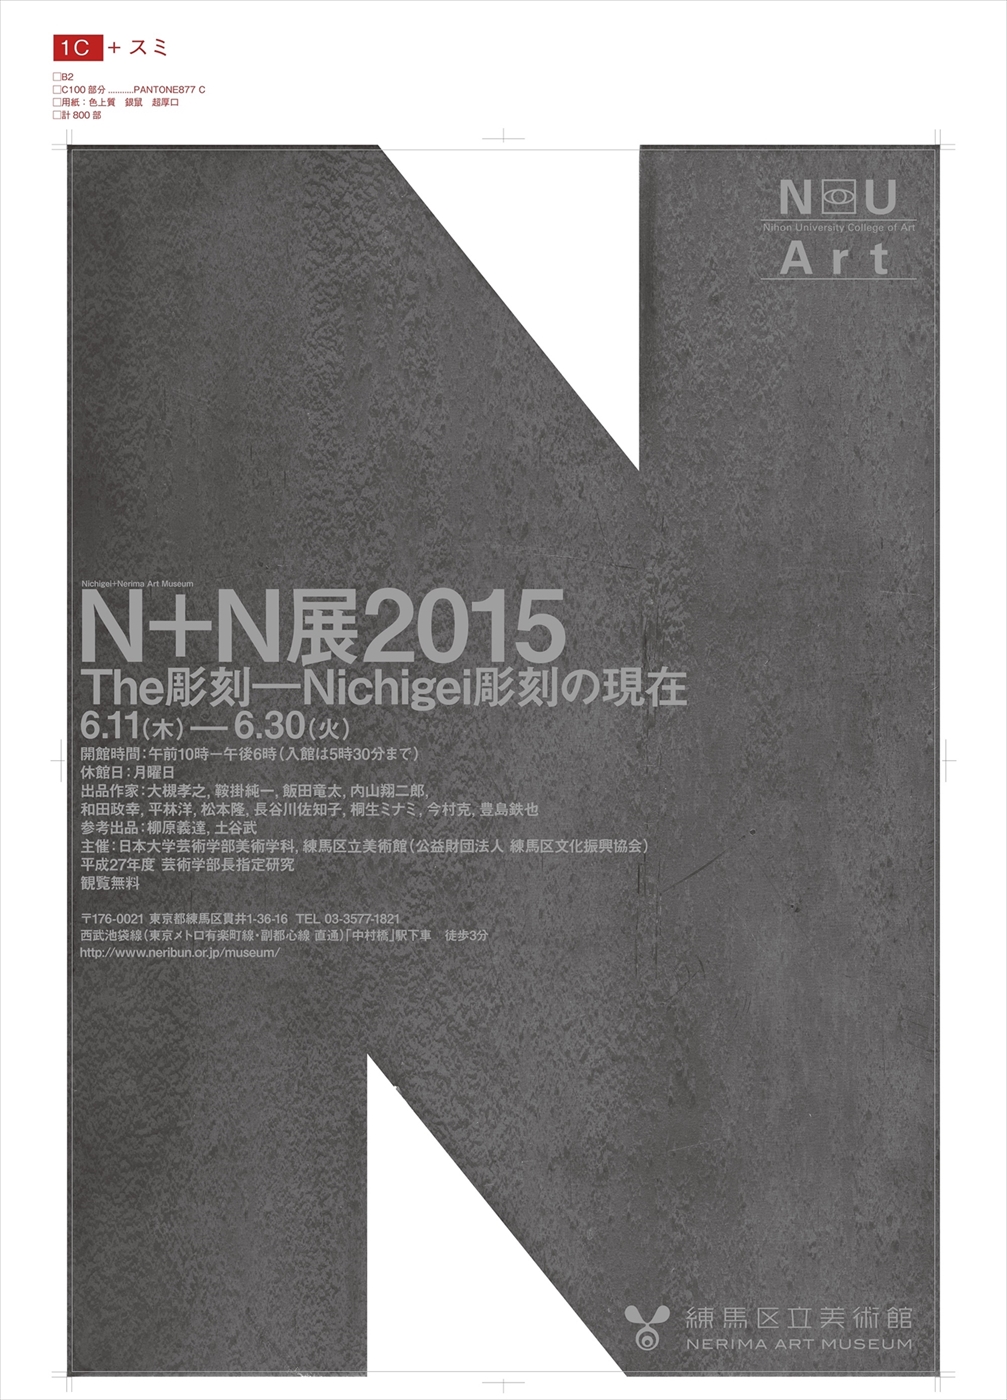 N+N展2015ポスター